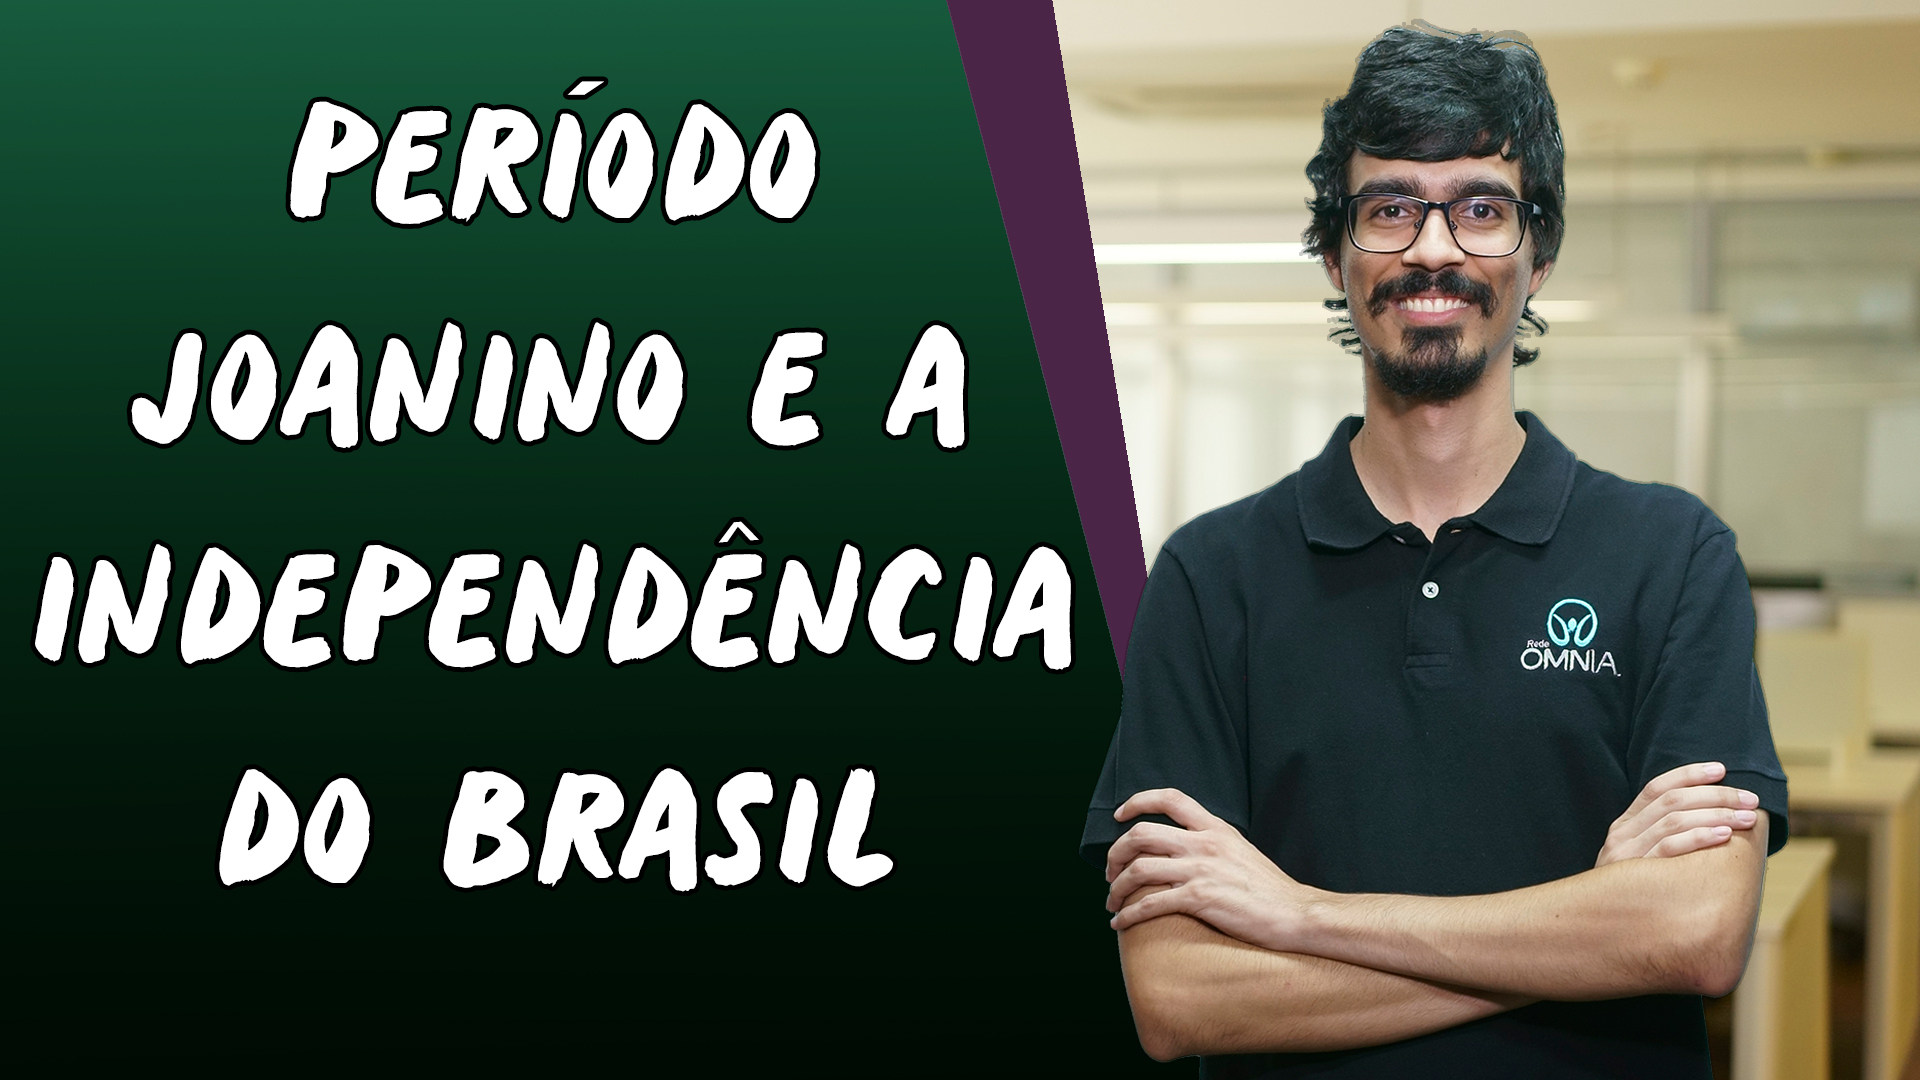 "Período Joanino e a Independência do Brasil" escrito sobre fundo verde ao lado da imagem do professor